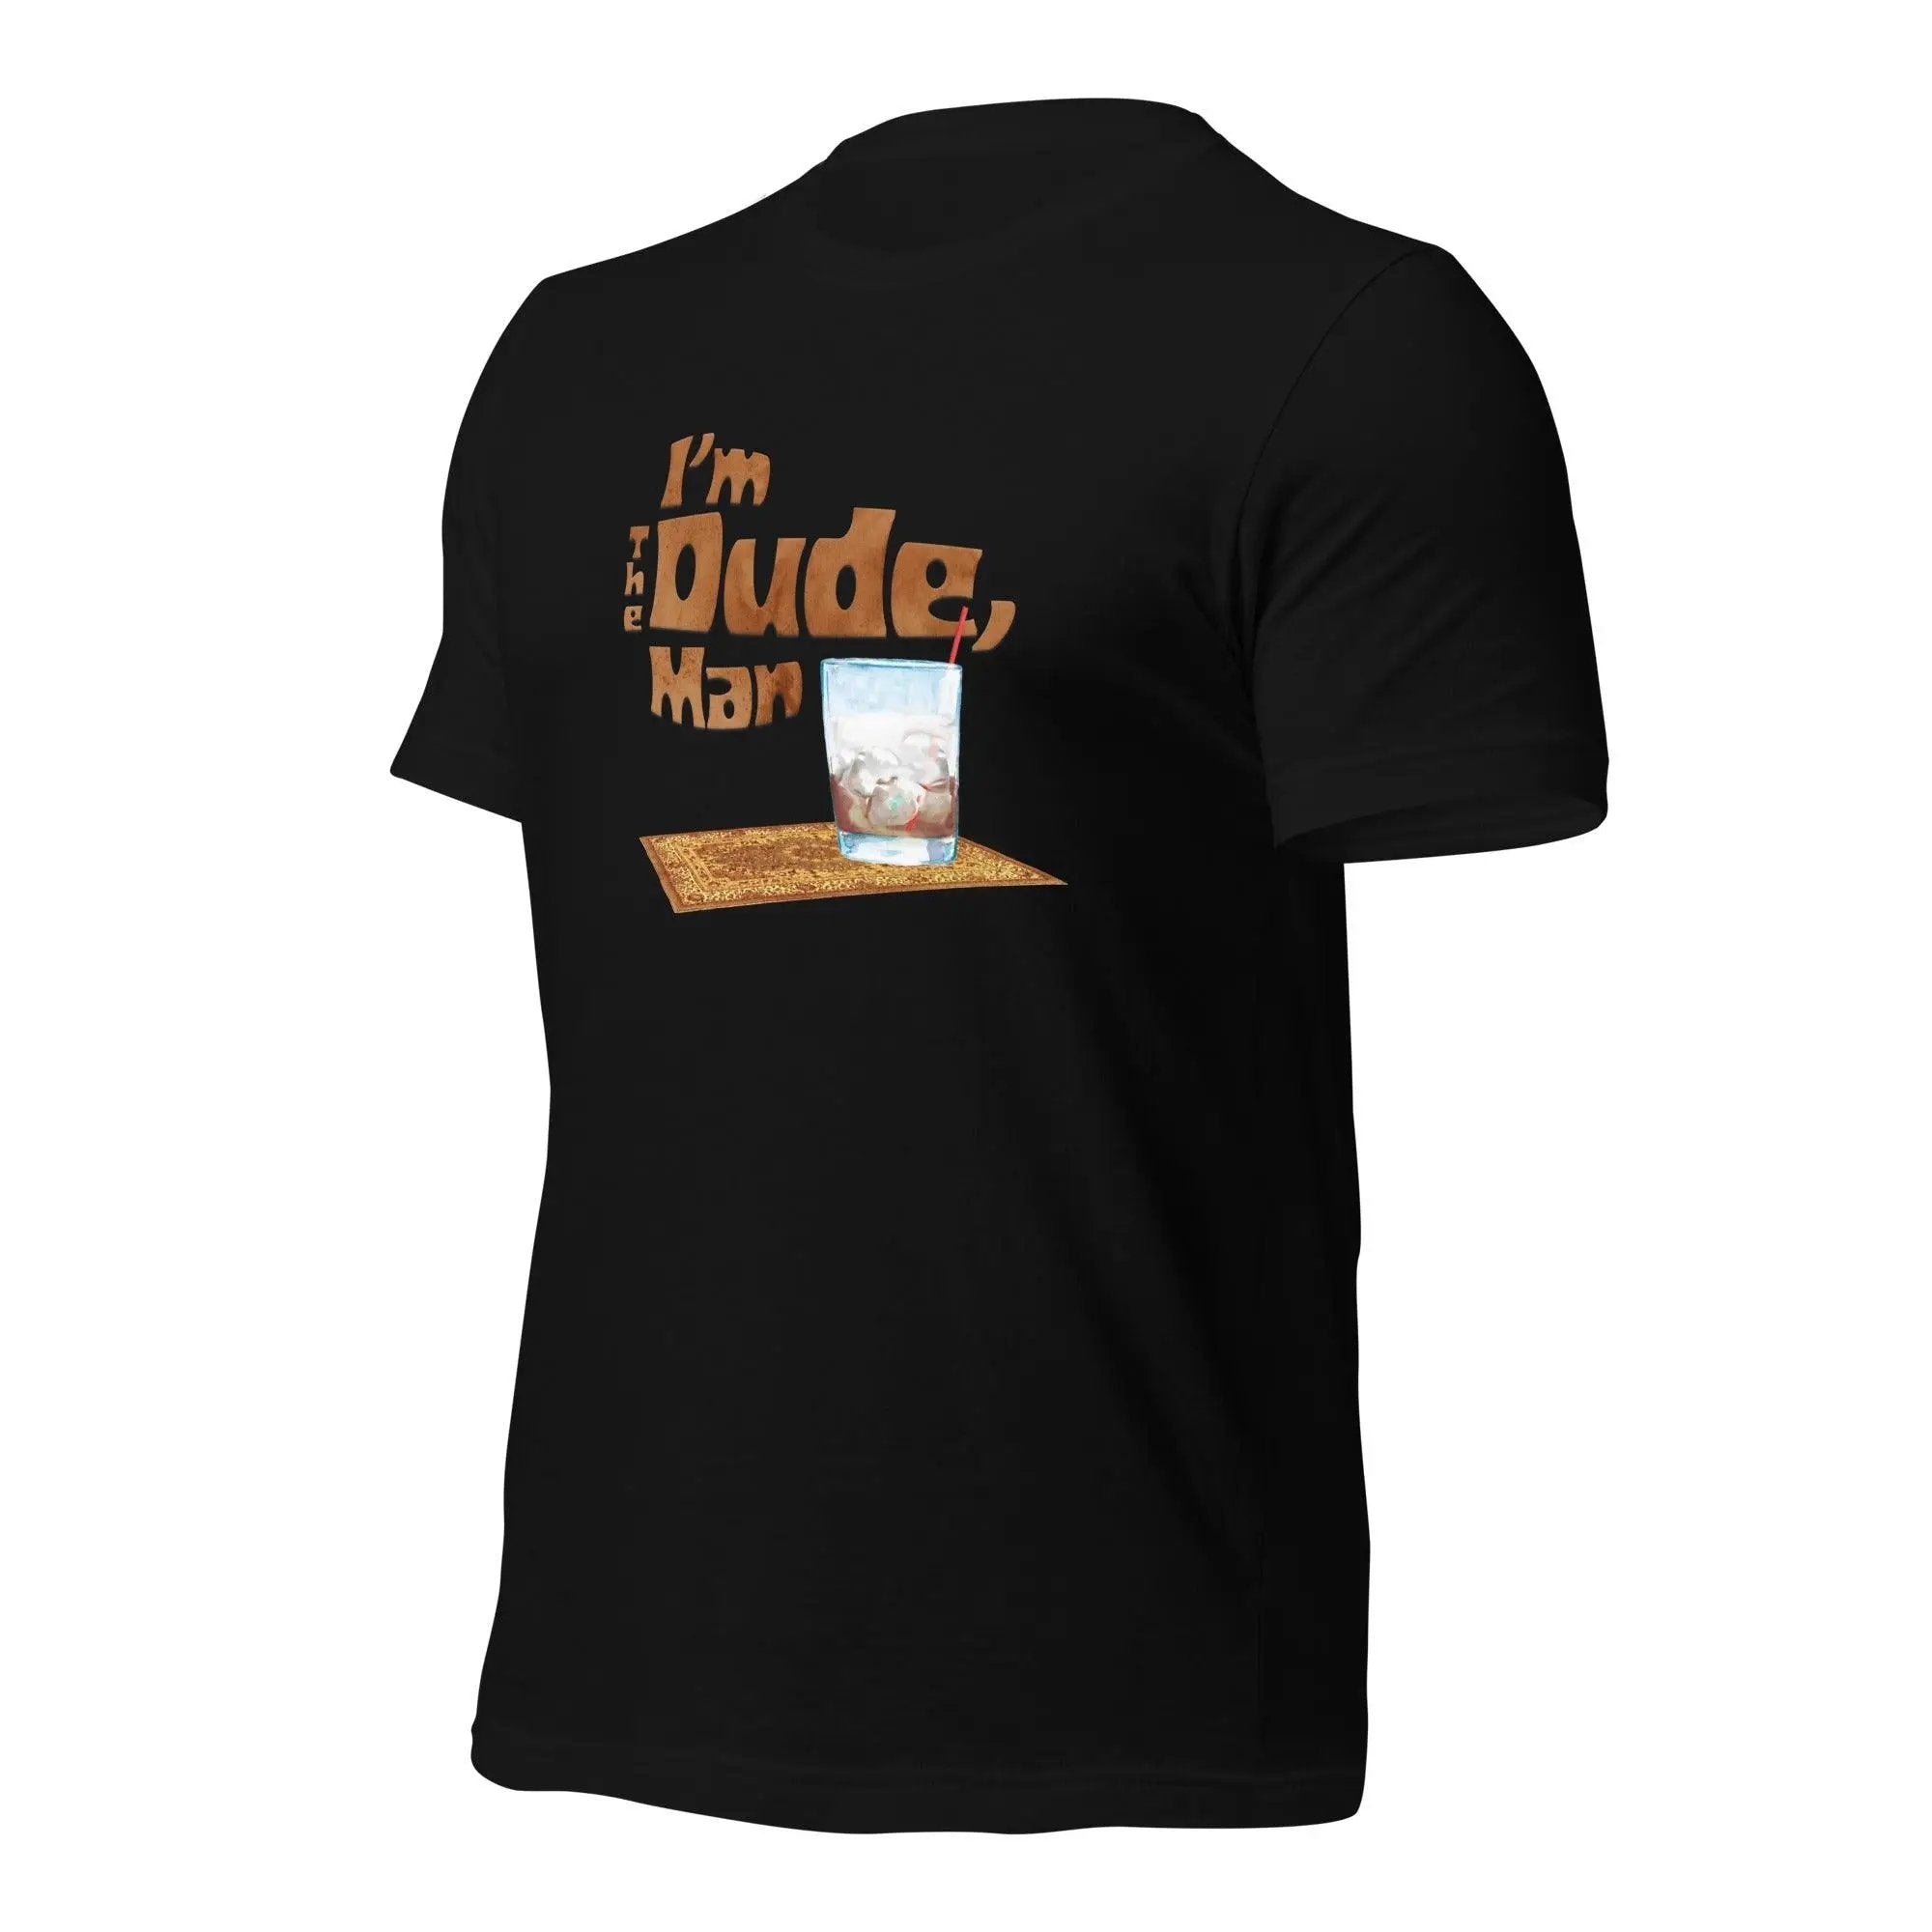 I'm The Dude, Man Unisex t-shirt